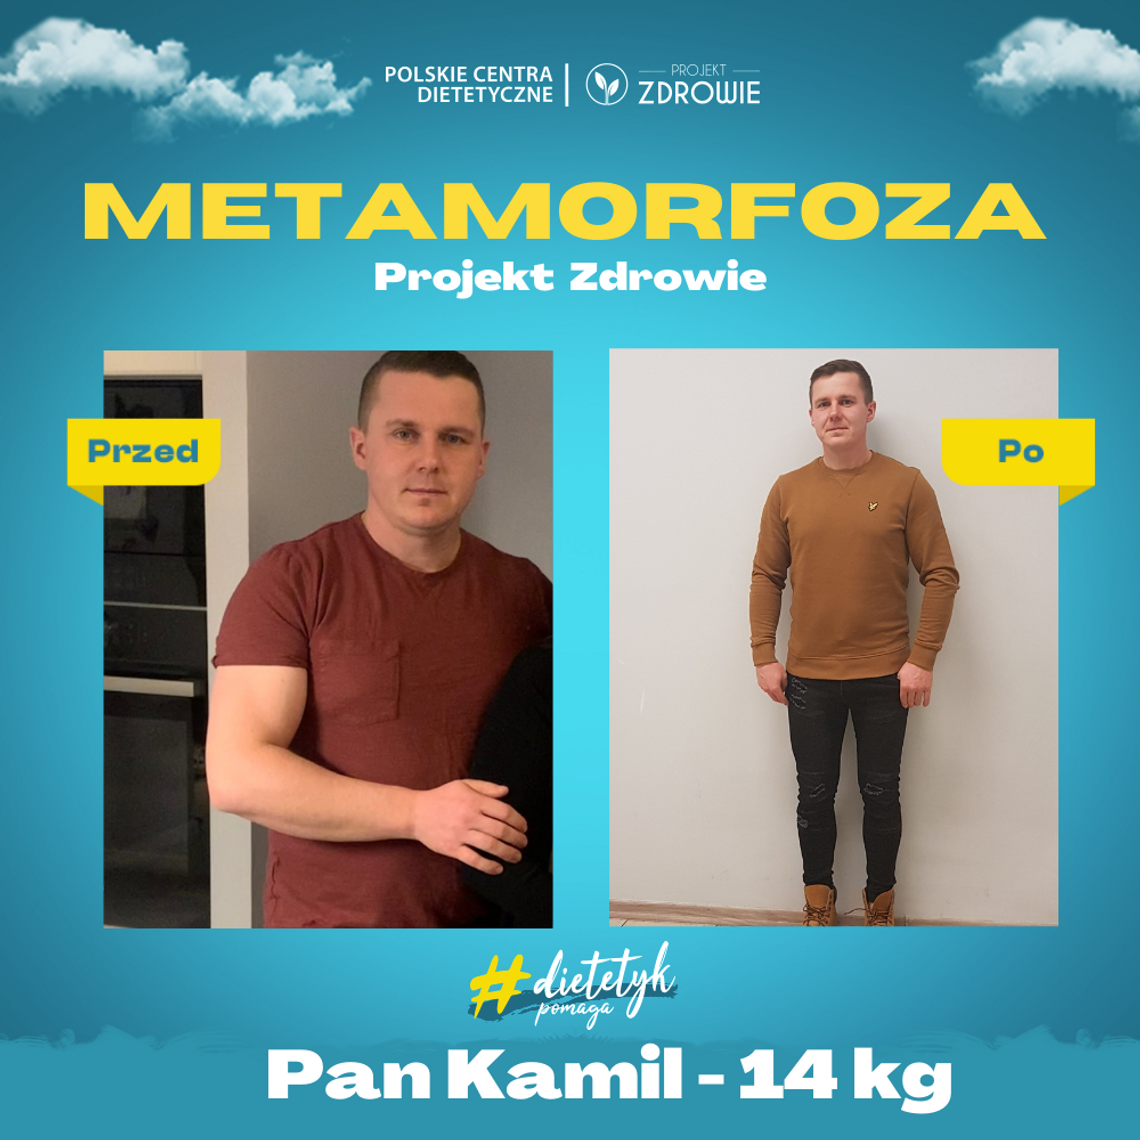 Sprawdź co stoi za sukcesem Pana Kamila - 14 kg!